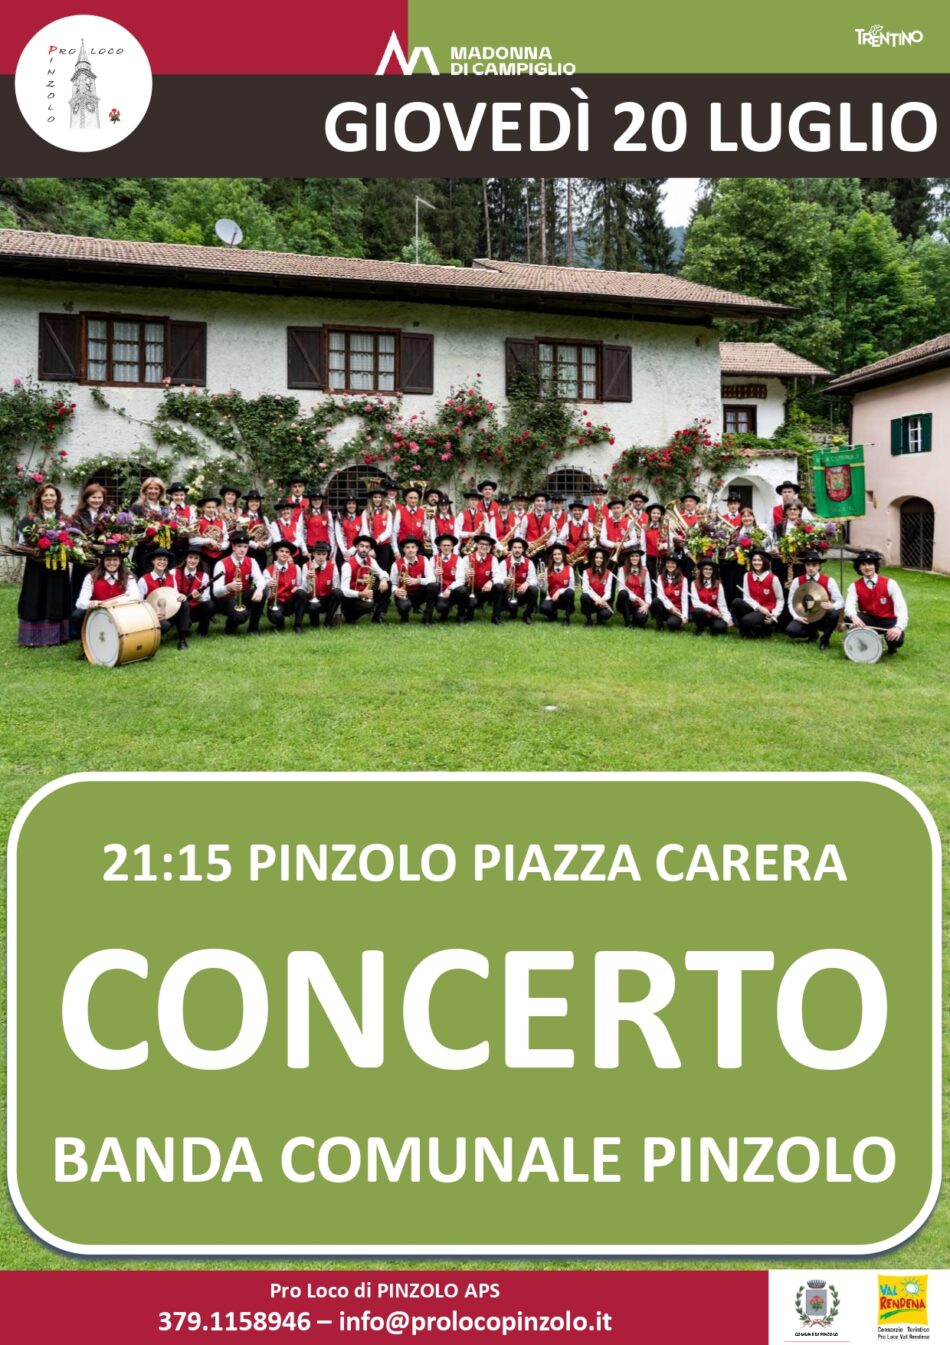 L’Estate è Pinzolo: Giovedì 20 luglio ore 21.15 – CONCERTO della Banda Comunale di Pinzolo in piazza Carera